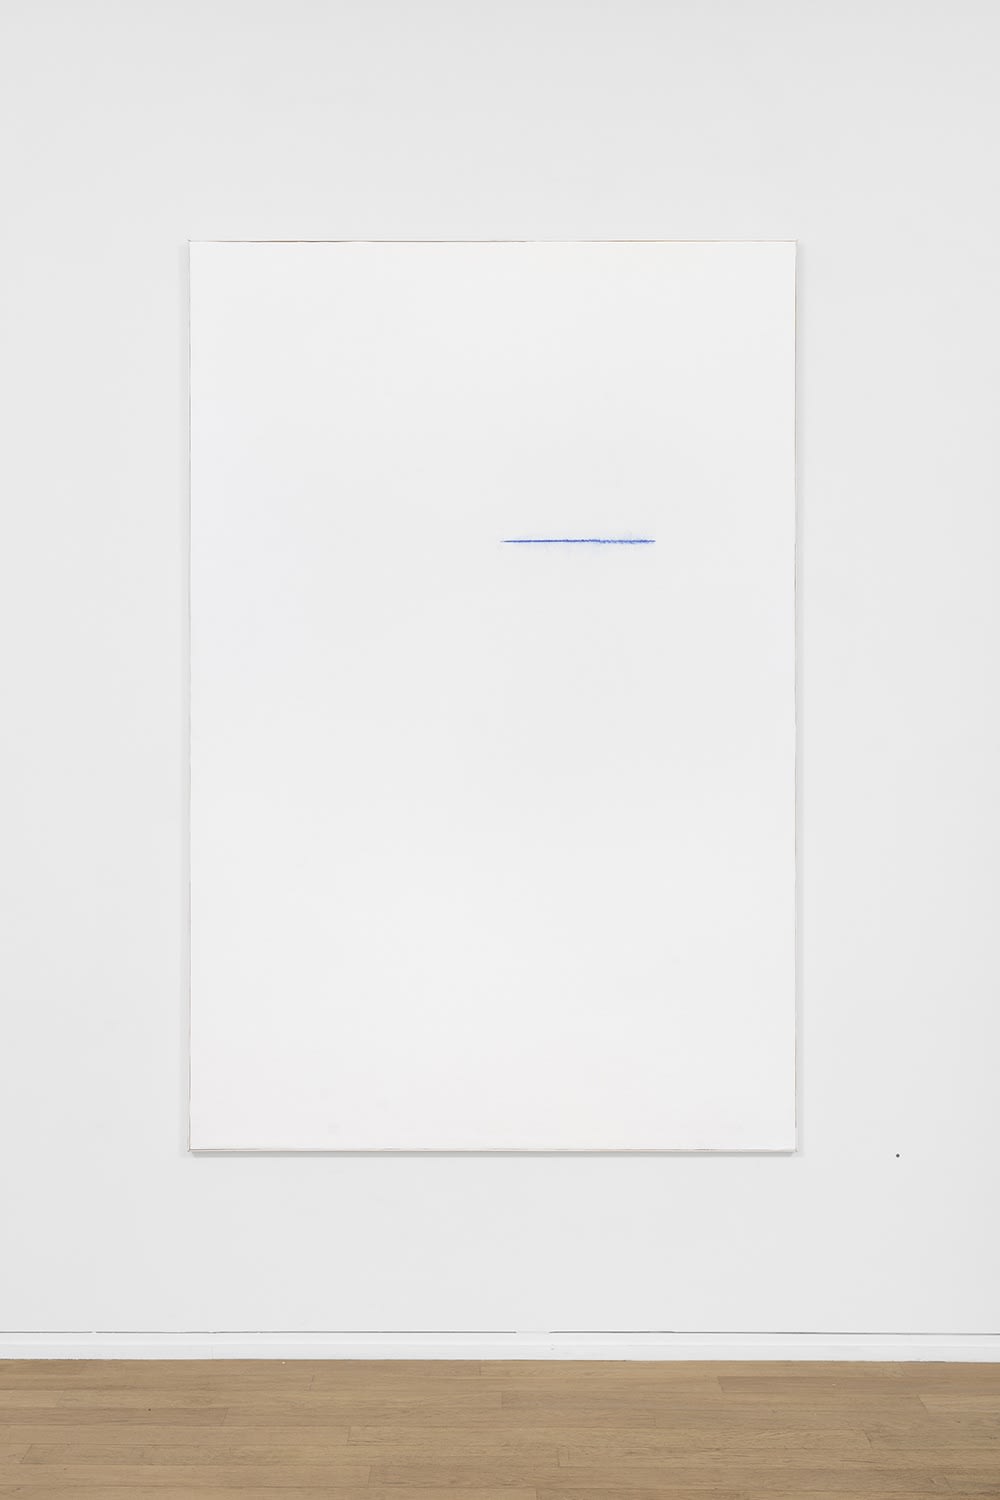 Claude Chaussard, Note, Craie de traçage sur papier marouflé sur toile / panneau, 195 x 130 cm, 2017 ©Nicolas Brasseur